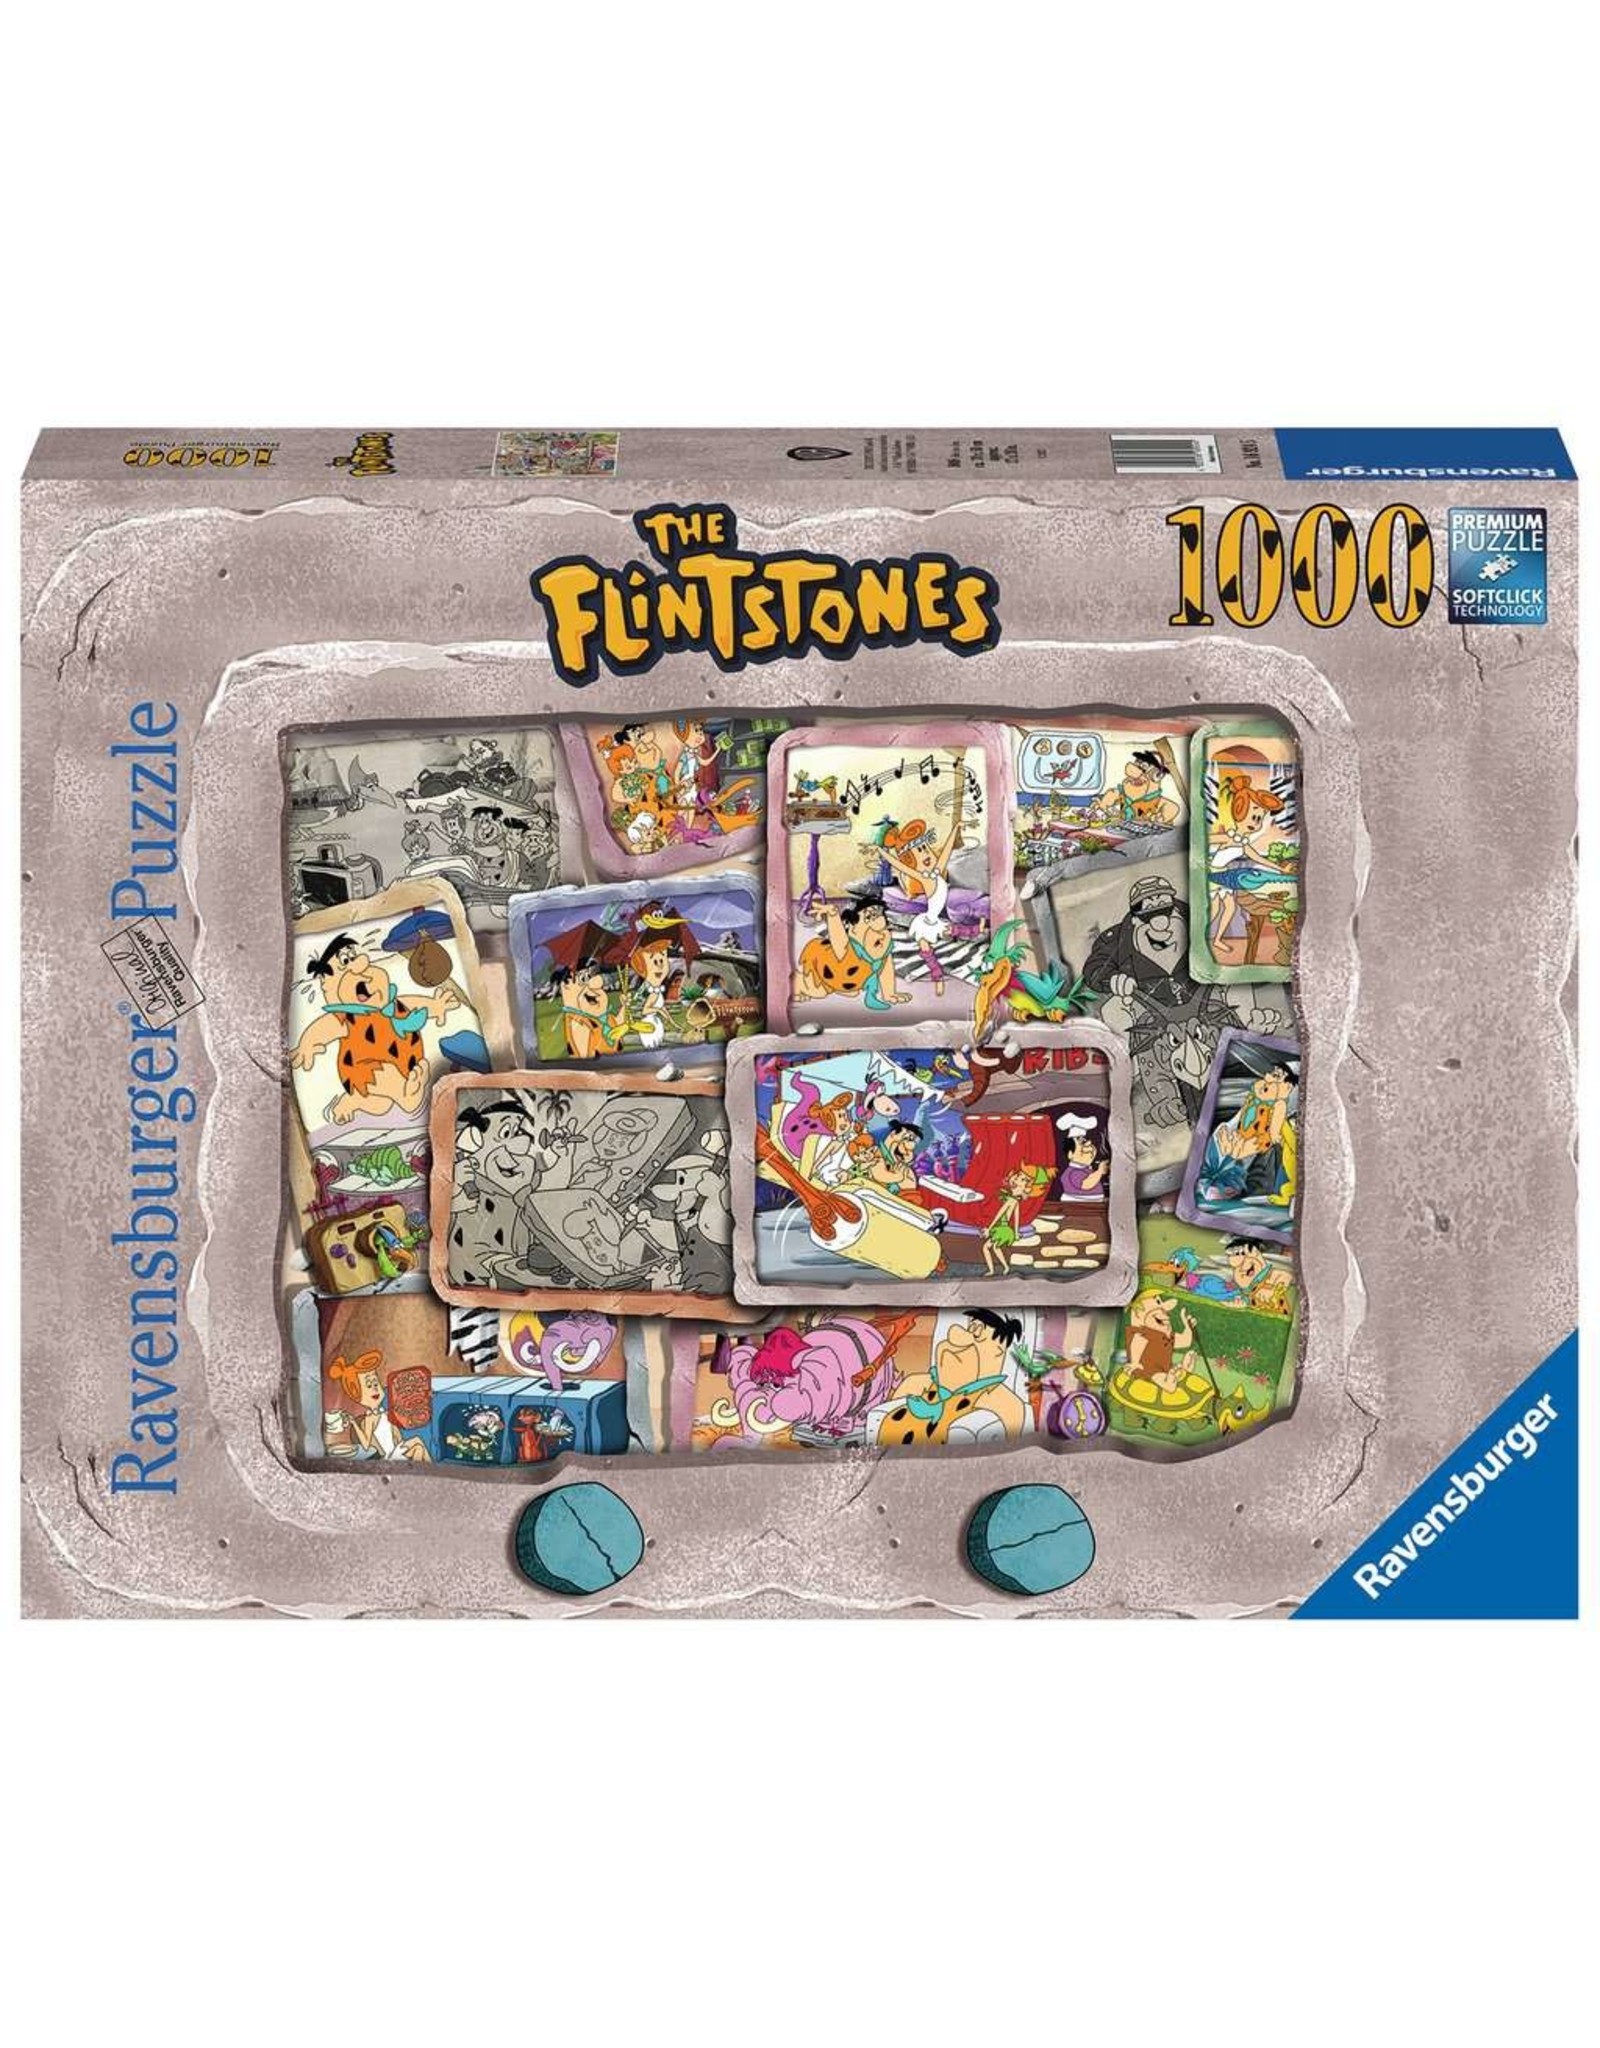 Ravensburger Flintstones 1000 Piece Puzzle